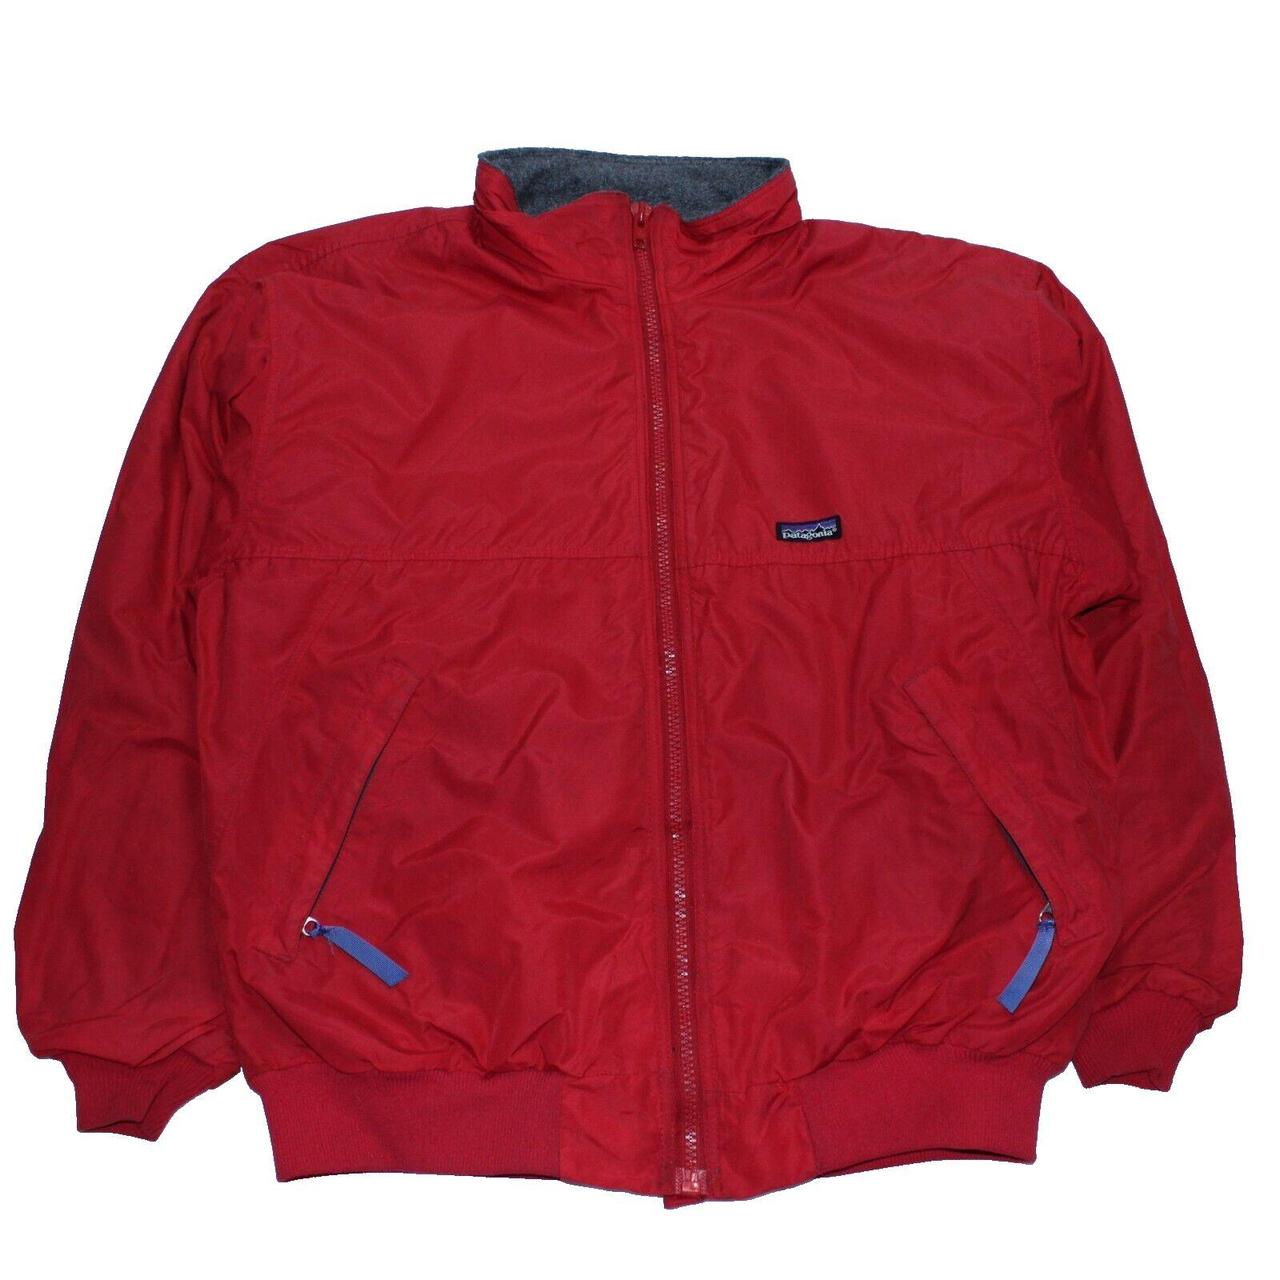 Vintage Patagonia Red Fleece Jacket